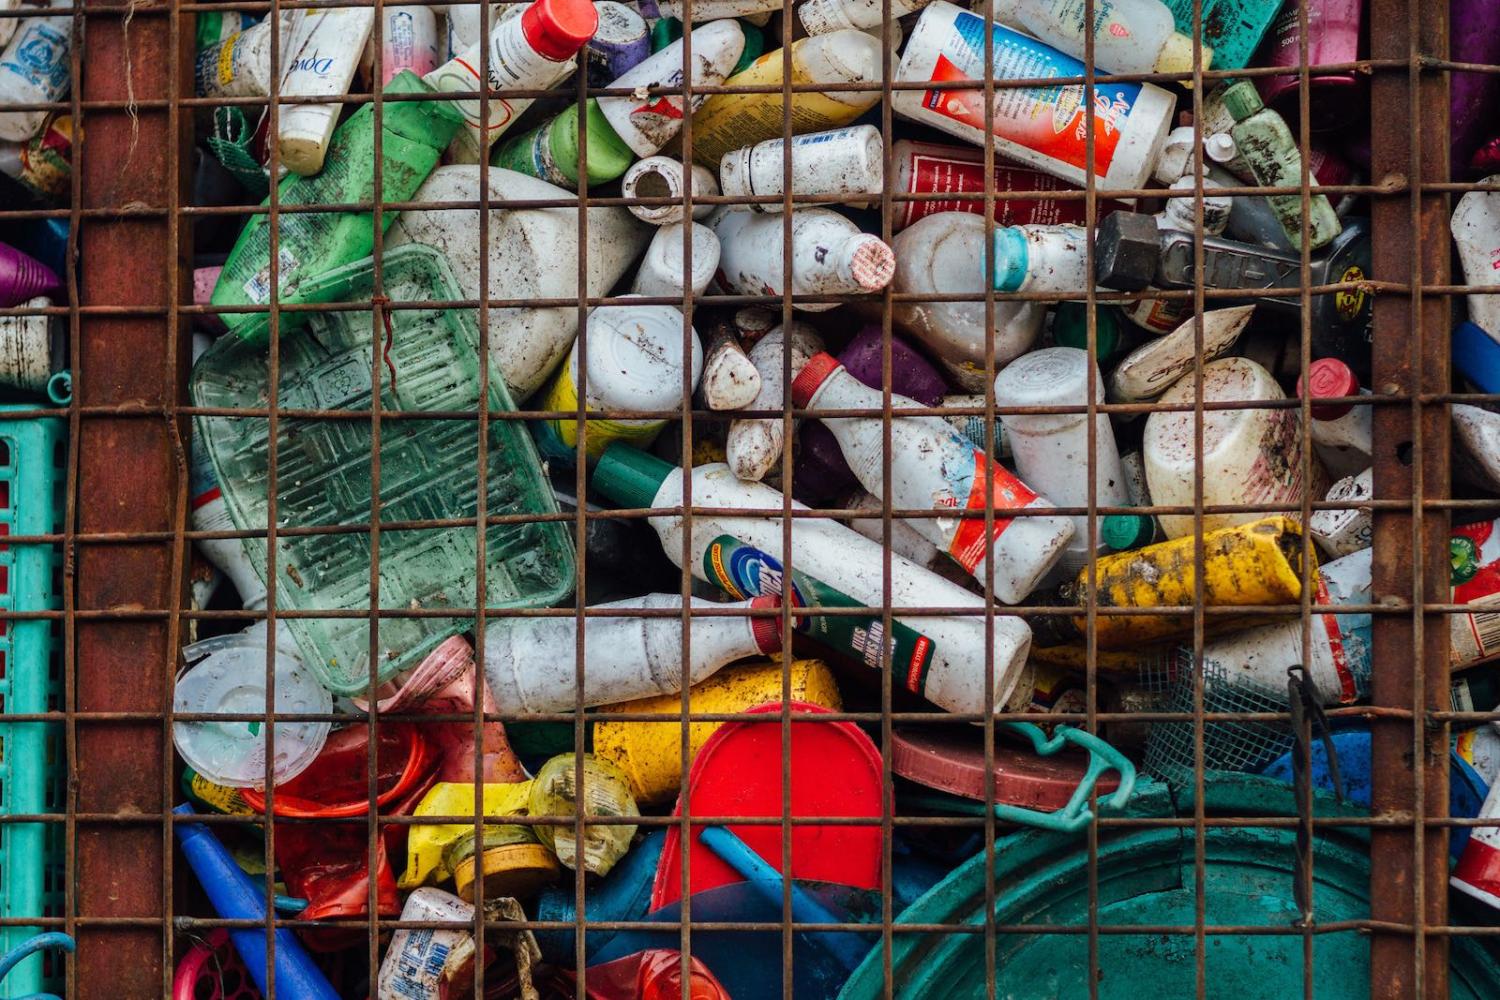 Plastic for landfill, Todo, Philippines (Photo: Adam Cohn/Flickr)